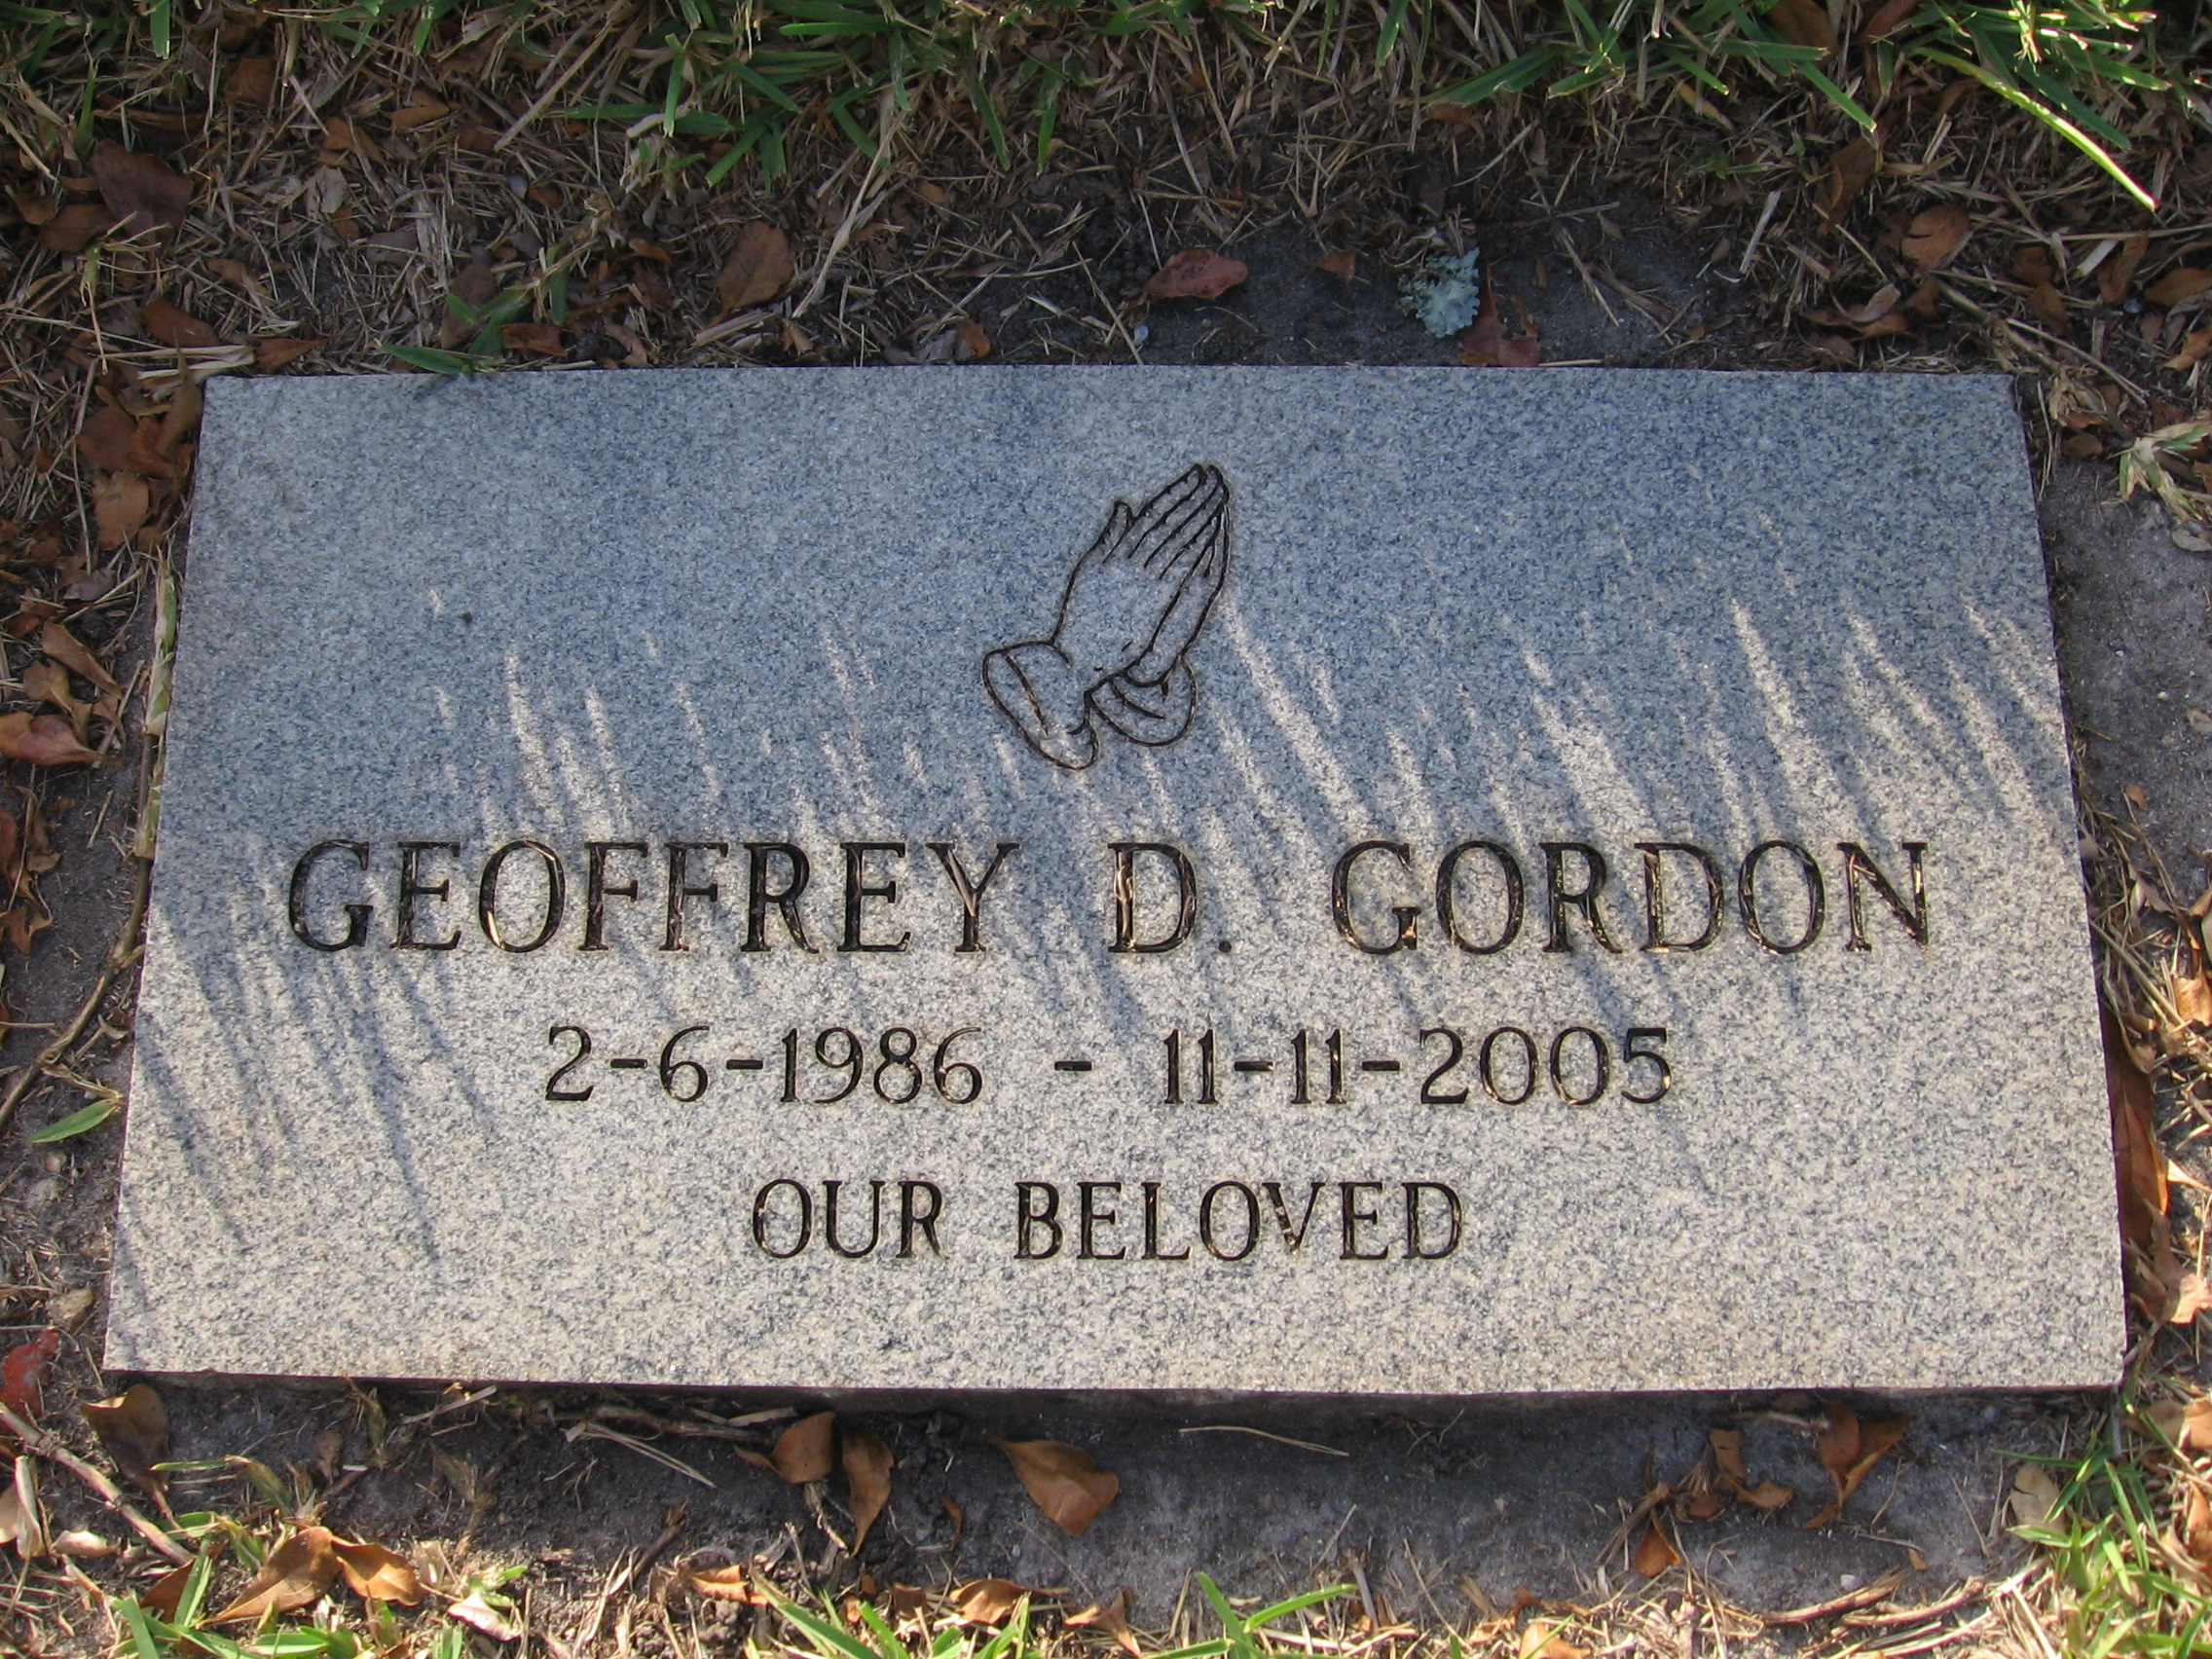 Geoffrey D Gordon